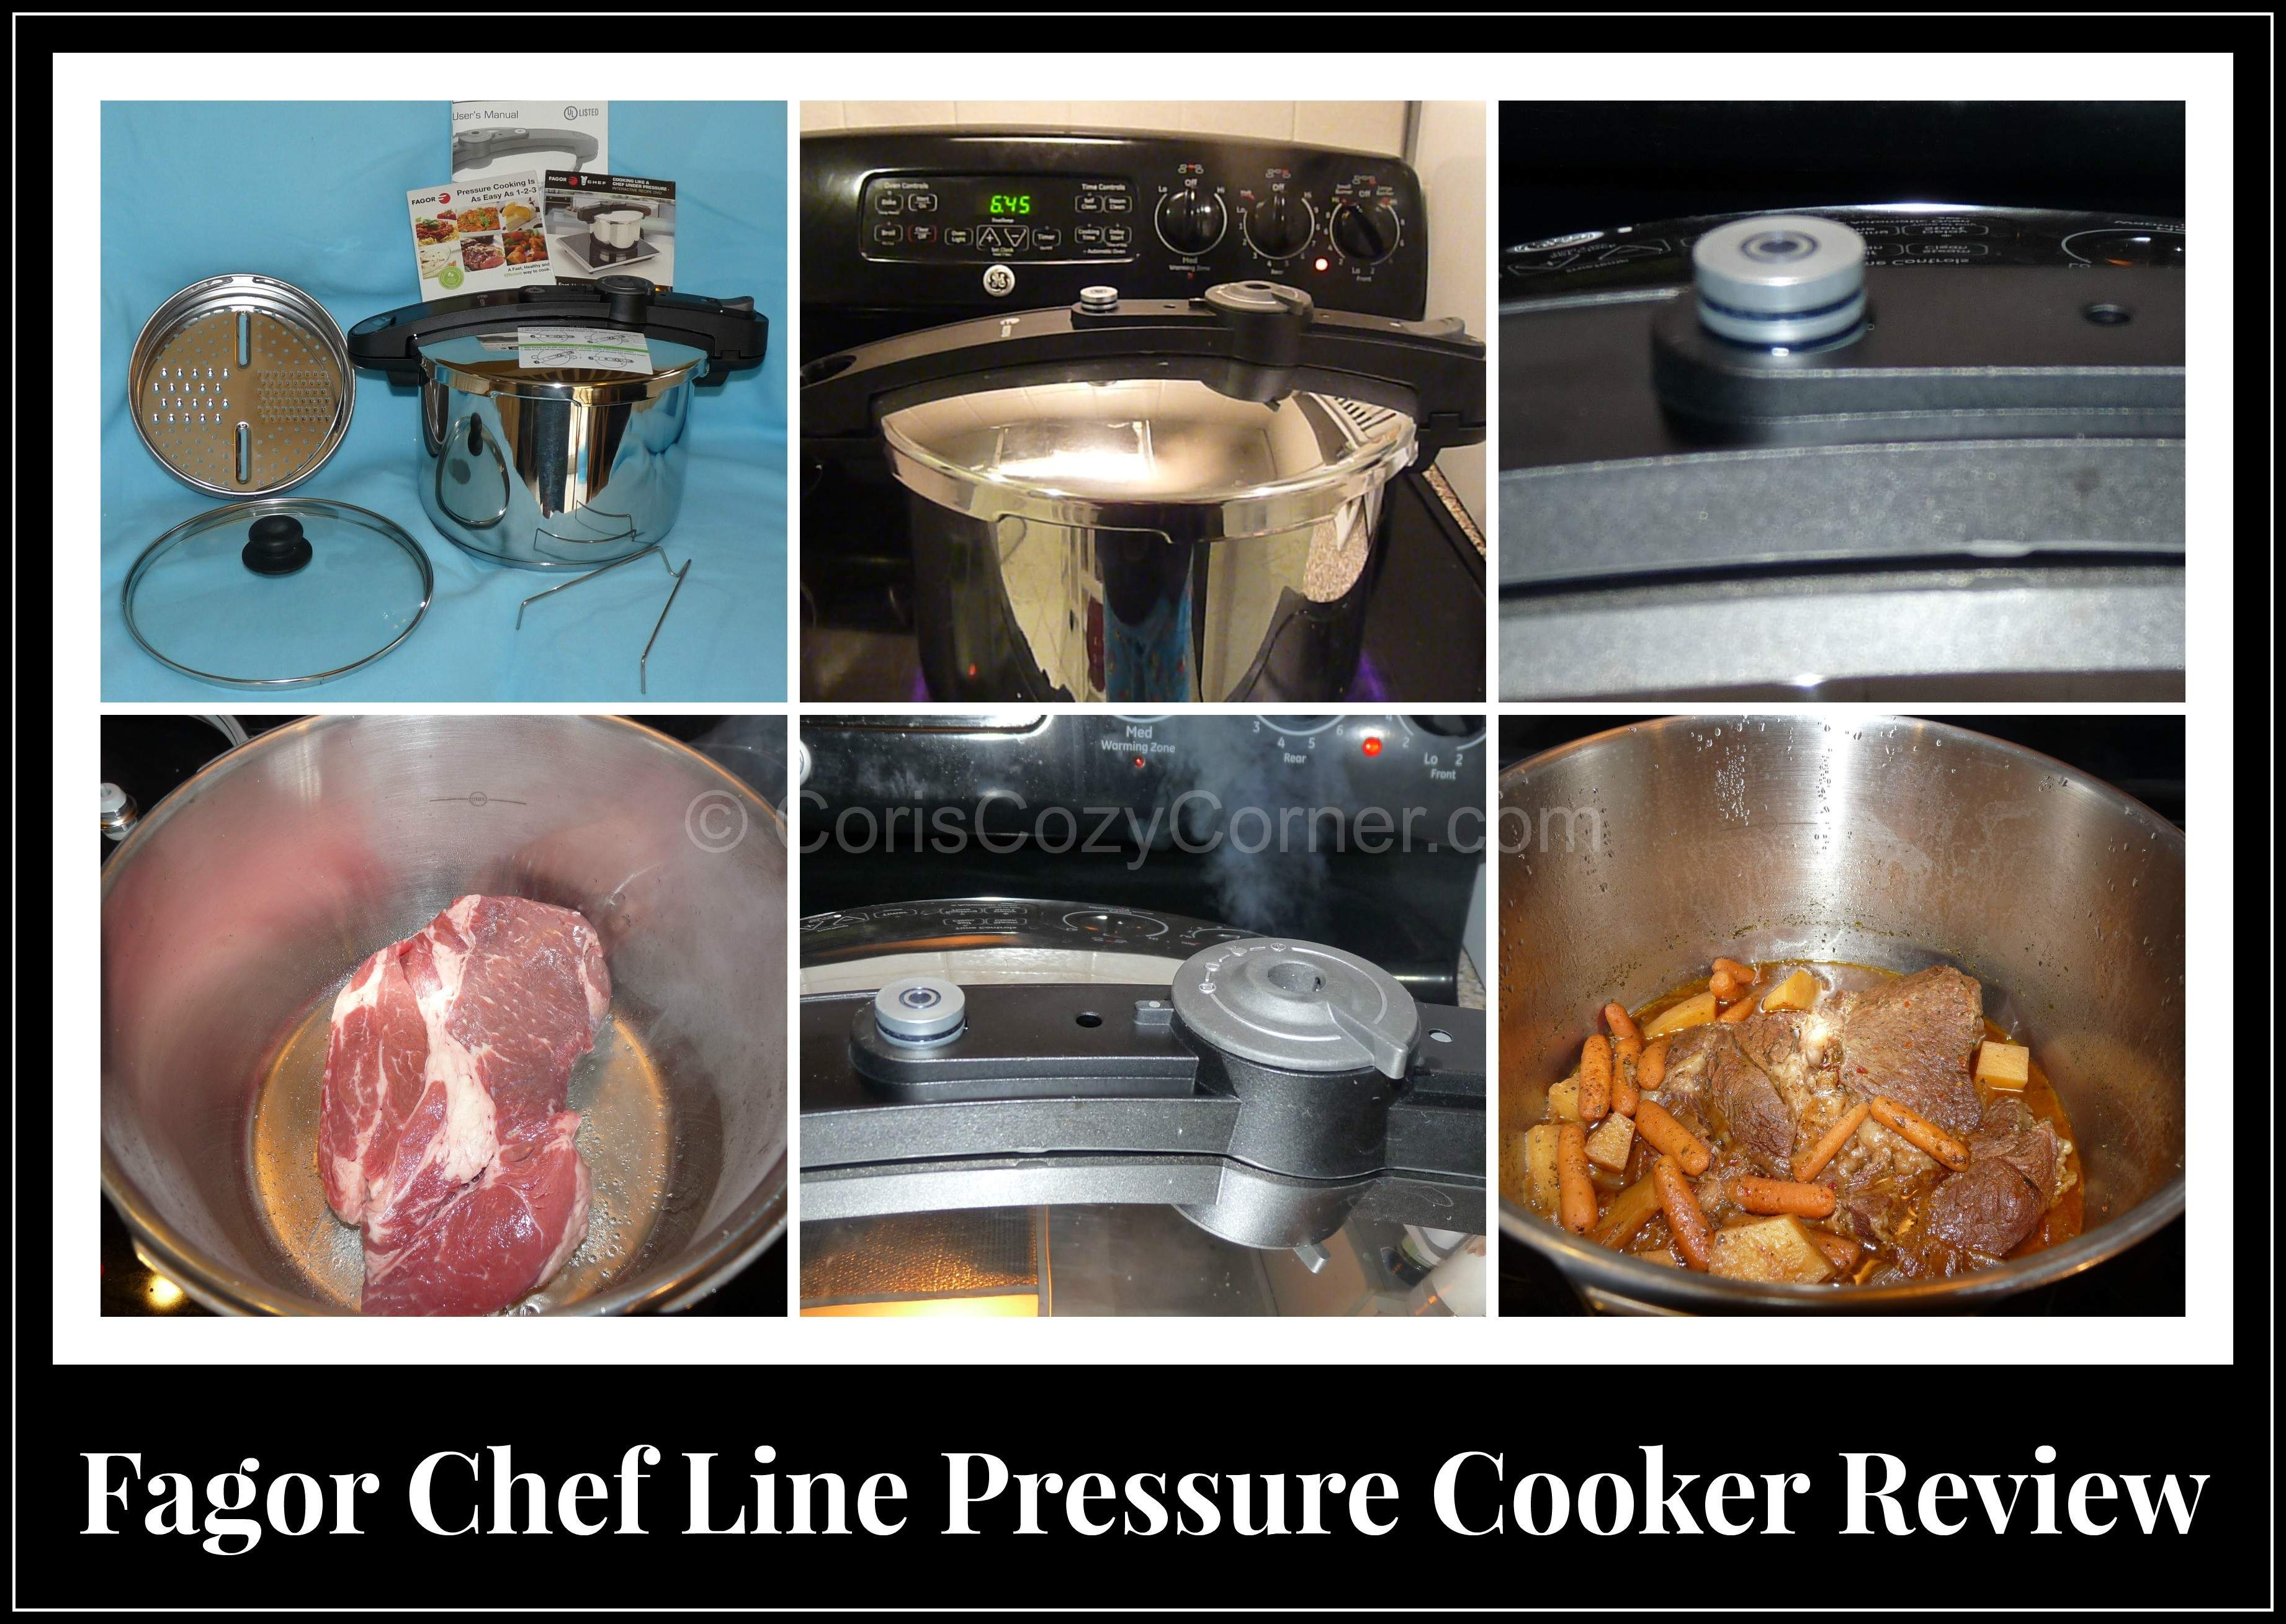 http://coriscozycorner.com/wp-content/uploads/2013/11/fagor-chef-line-pressure-cooker.jpg